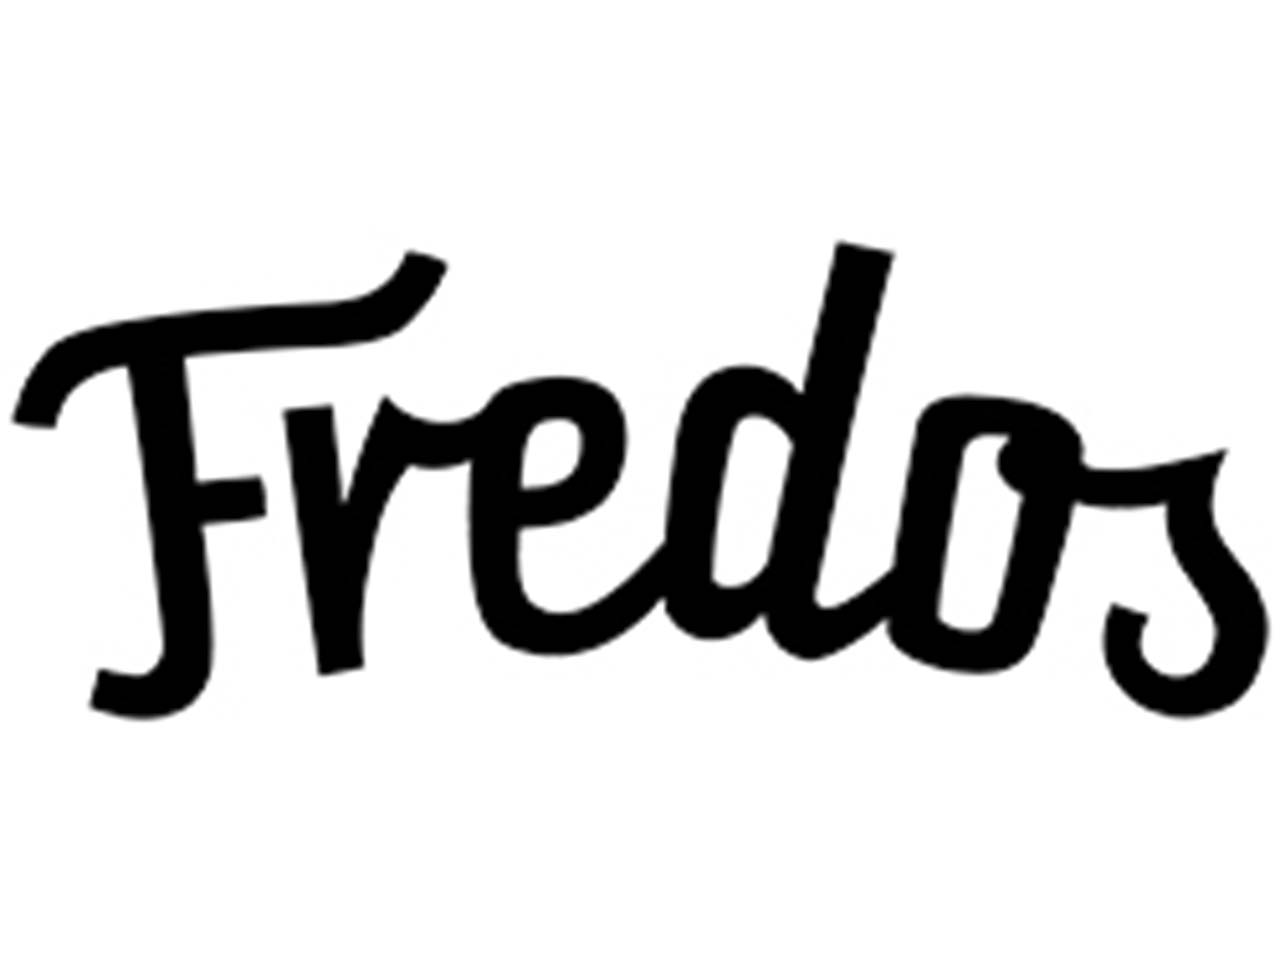 Fredos